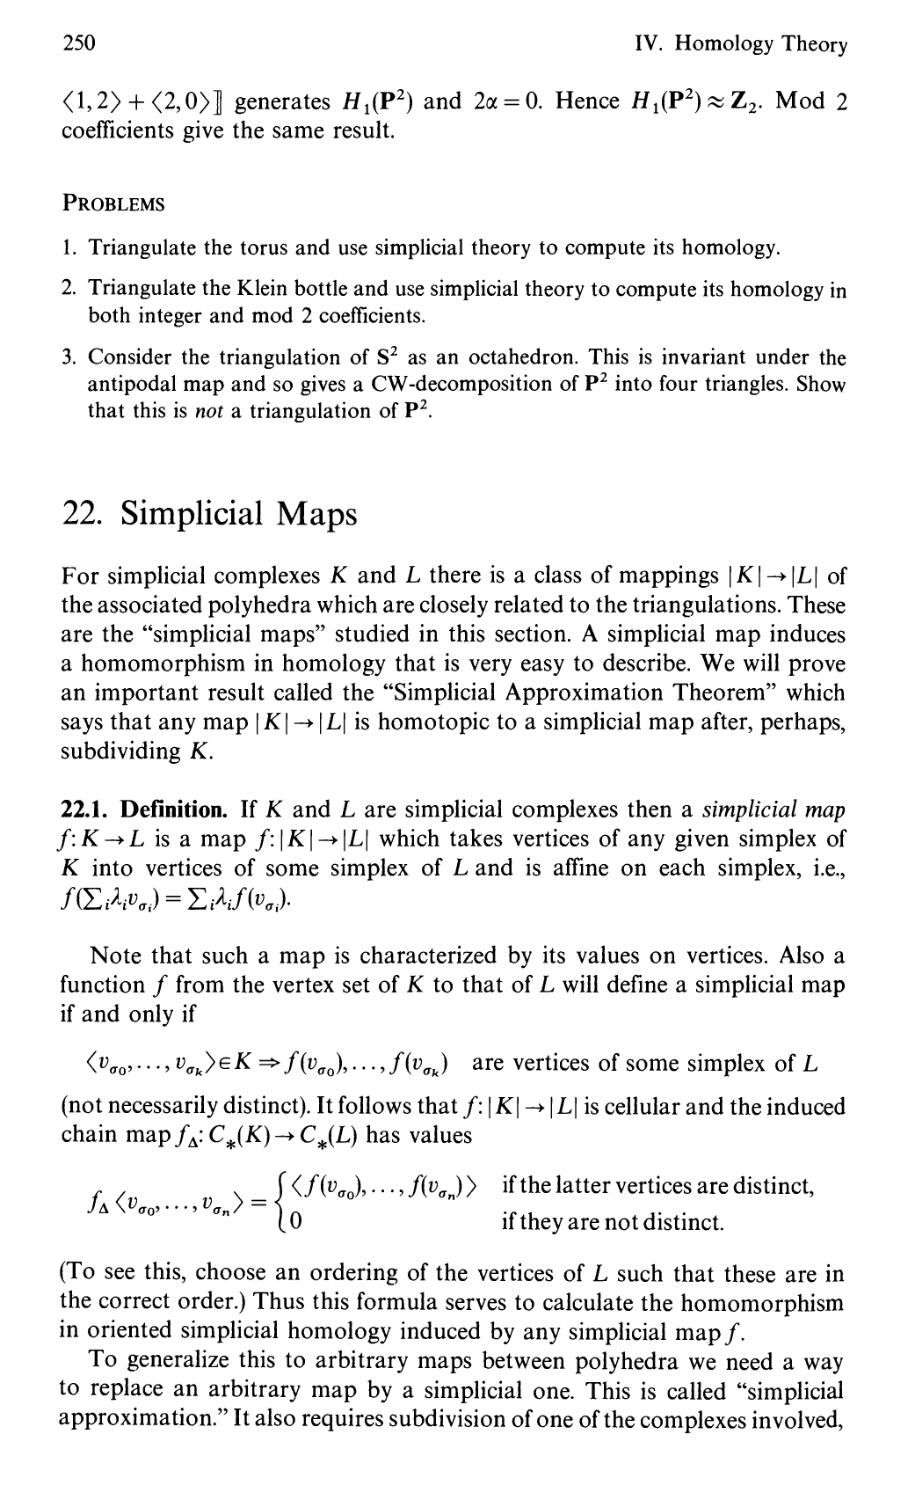 22. Simplicial Maps